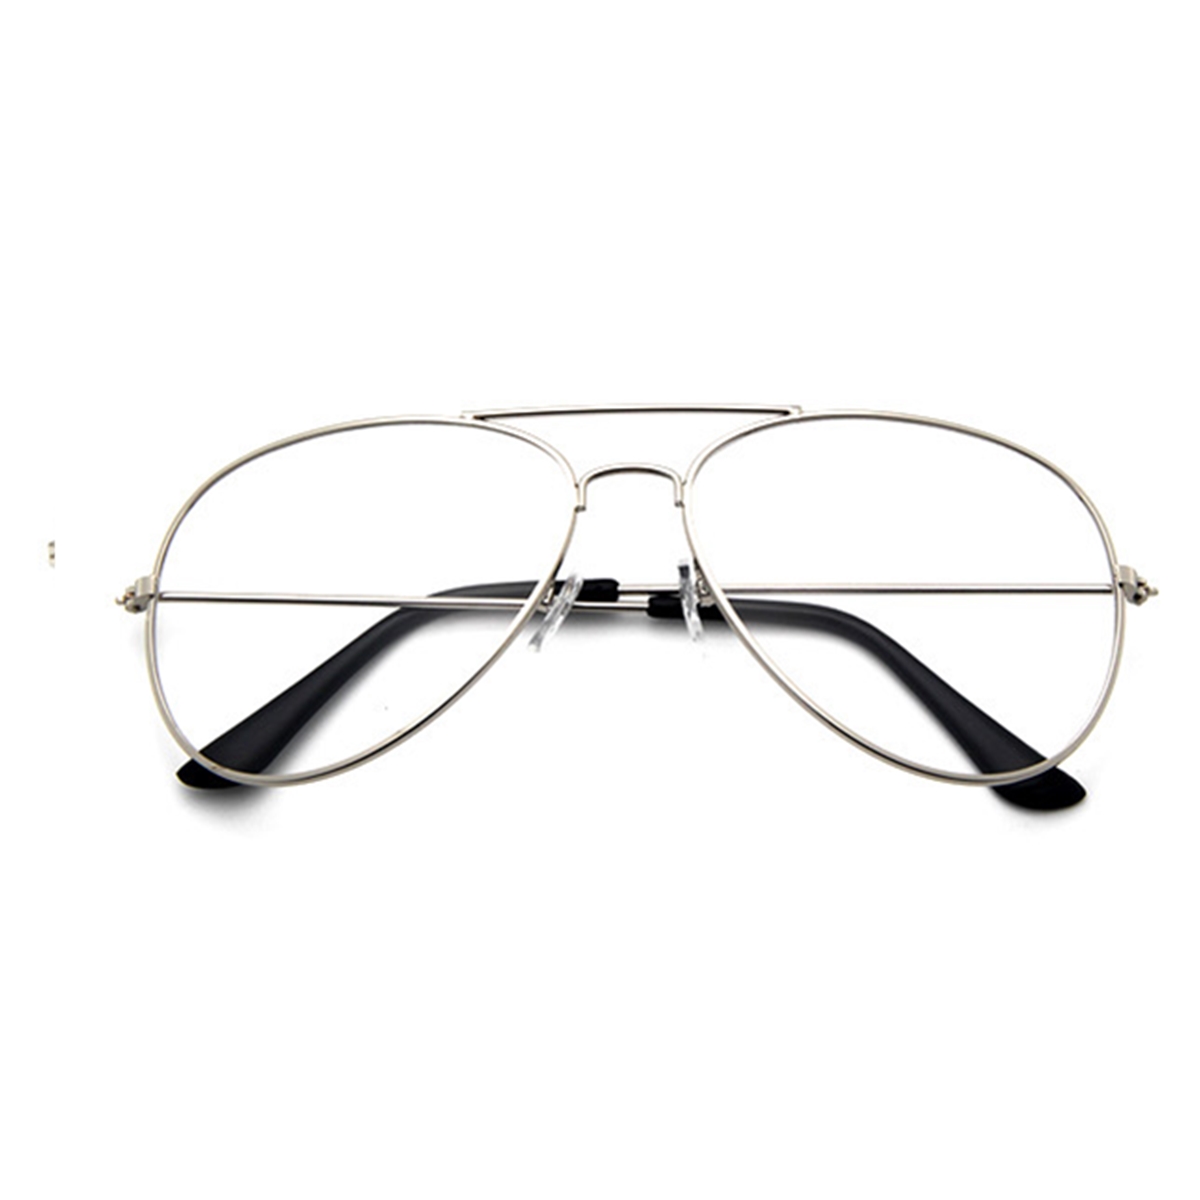 Unisex-Aviator-Pilot-Shape-Metal-Frame-Clear-Lens-Glasses-1123469